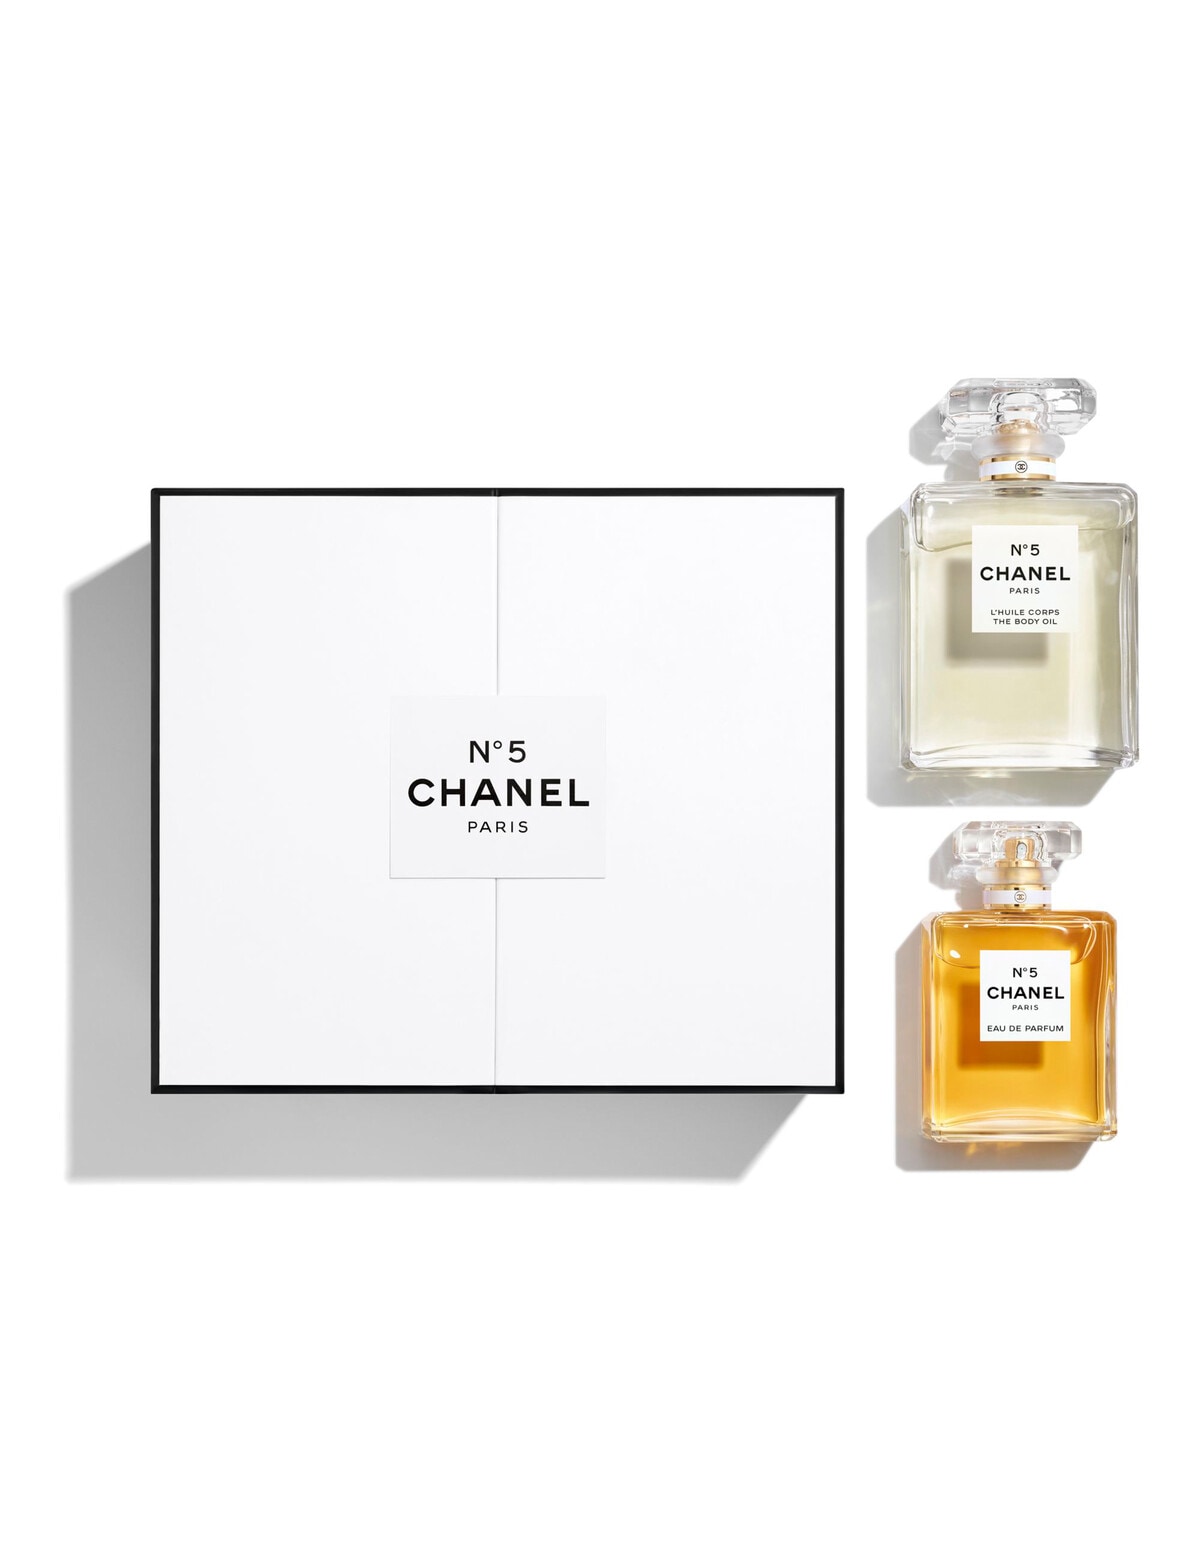 CHANEL N°5 Set With Eau De Parfum 50ml And Spray Body Oil 100ml - N°5